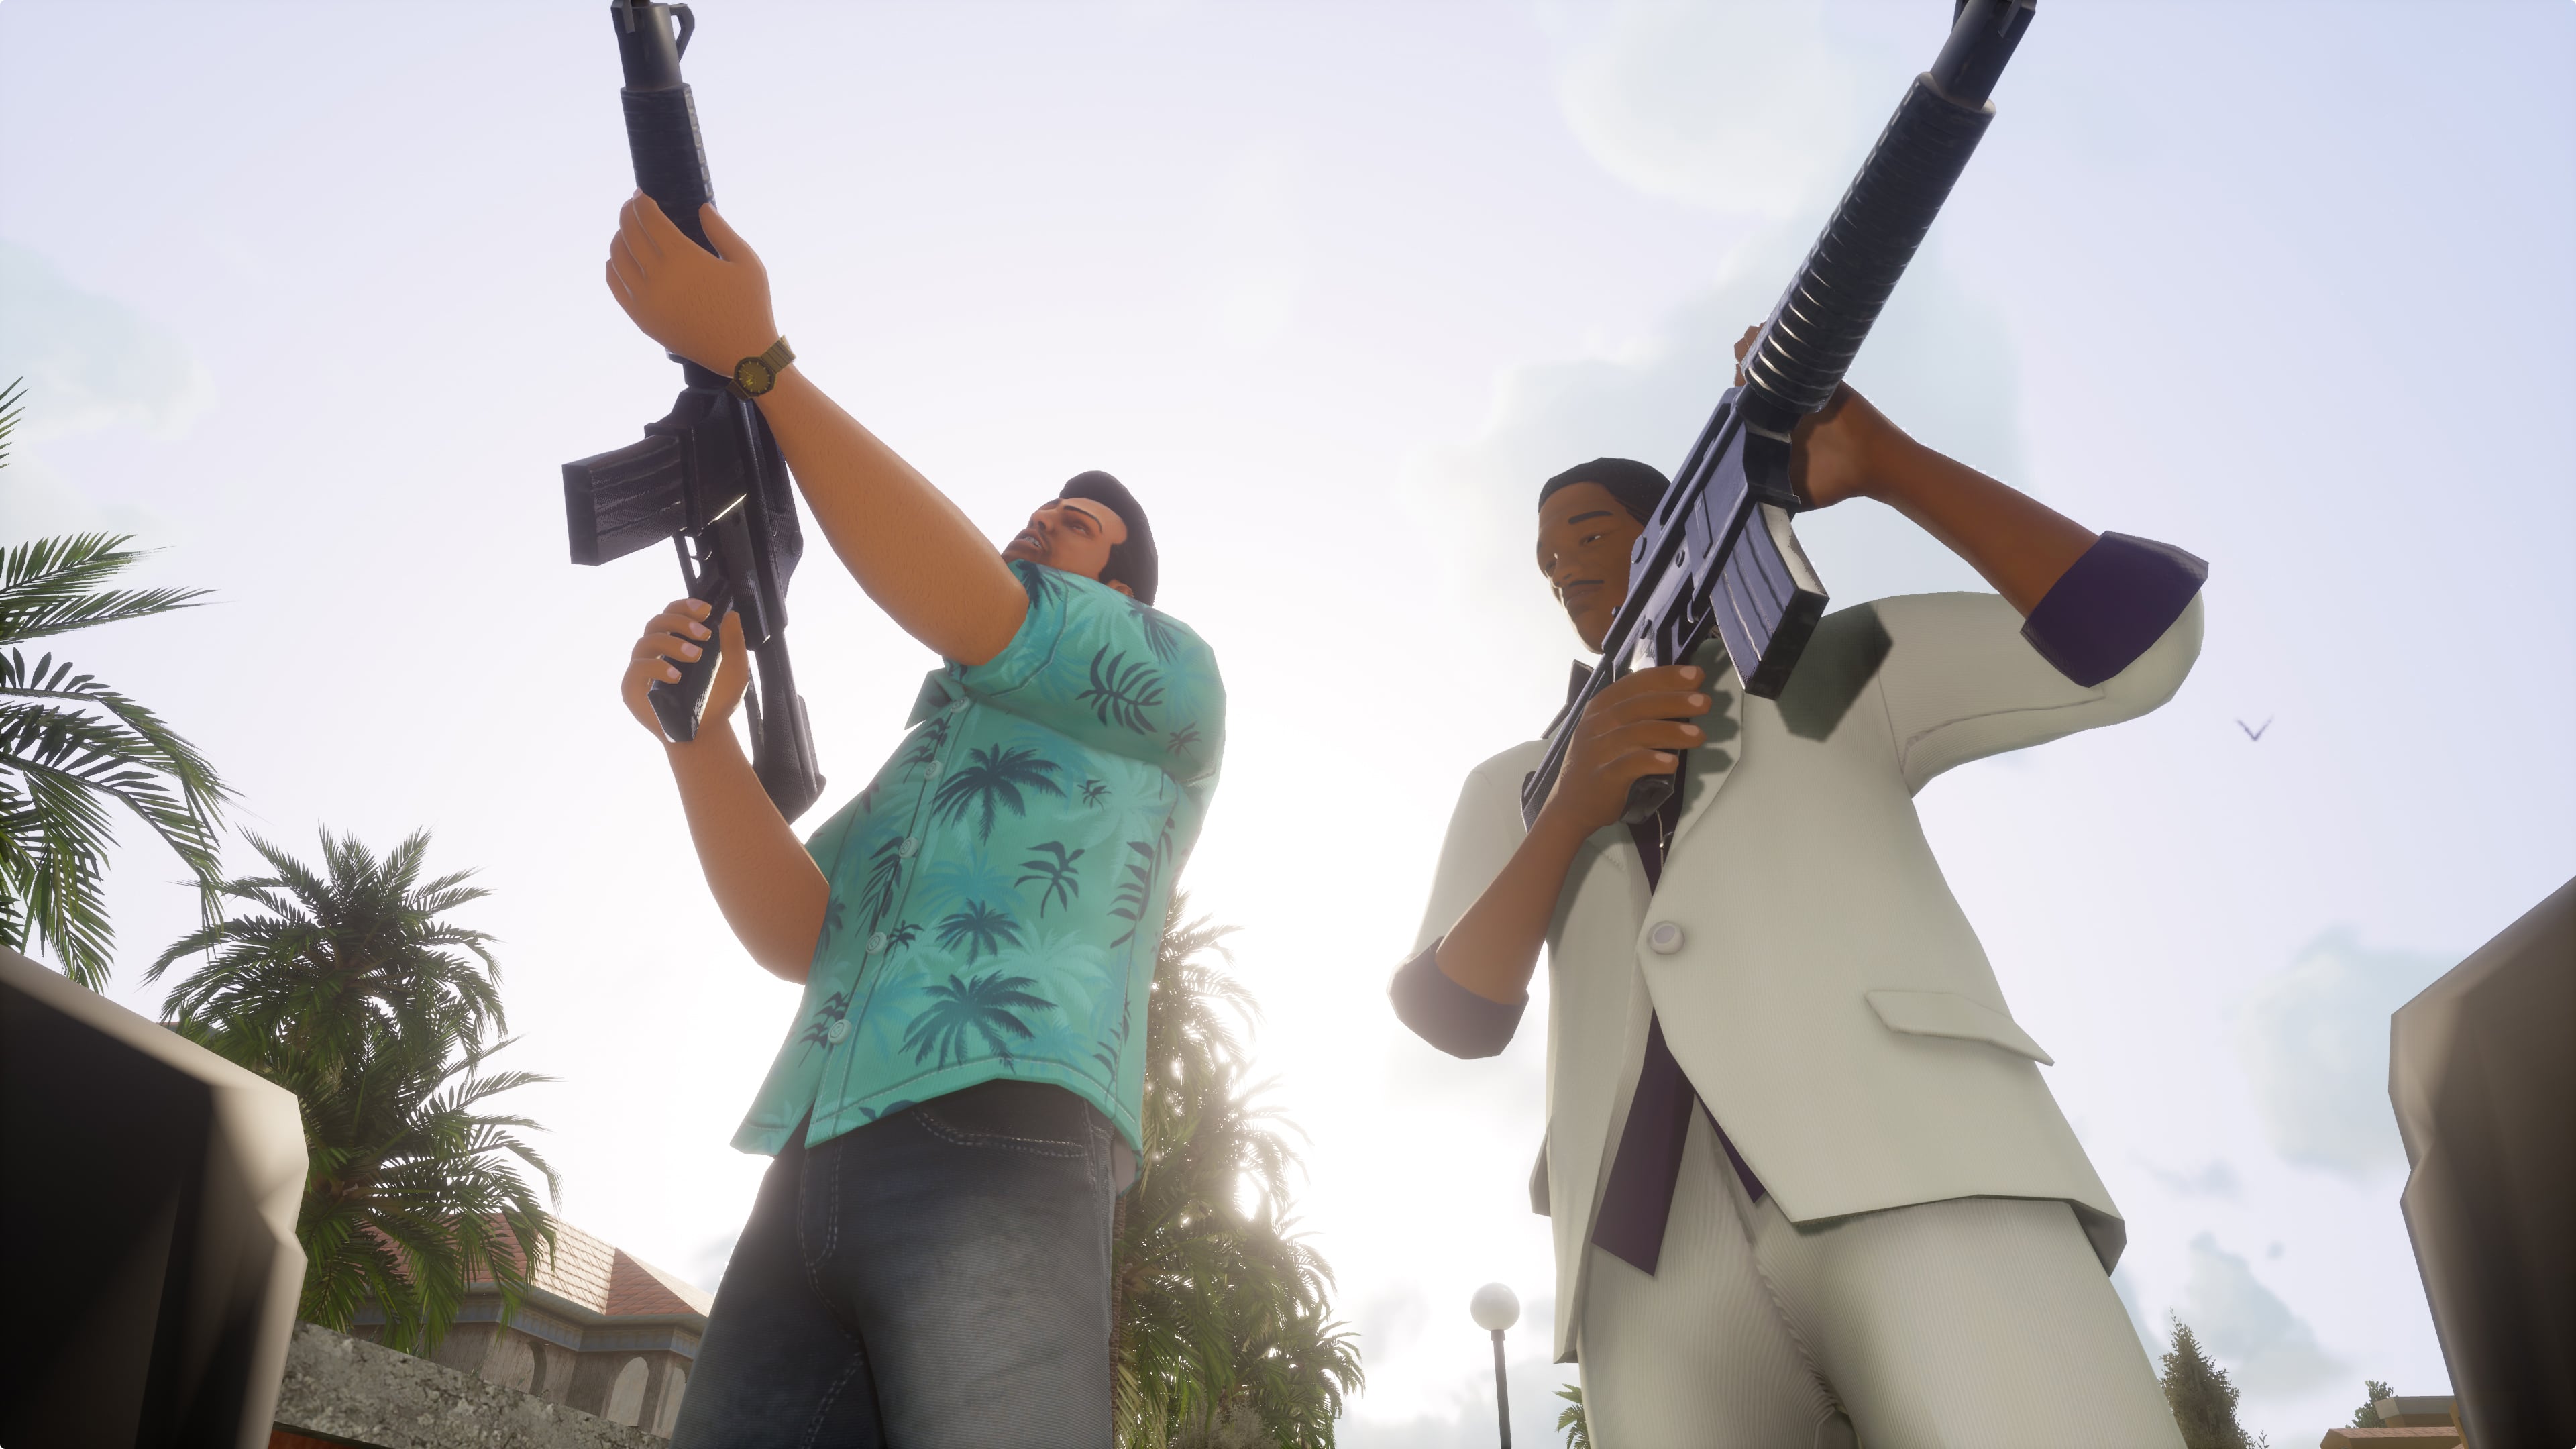 Trilogia Grand Theft Auto: Edição definitiva do GTA 3 de Rockstar, GTA Vice  City e GTA San Andreas remasters foi vazada -  News